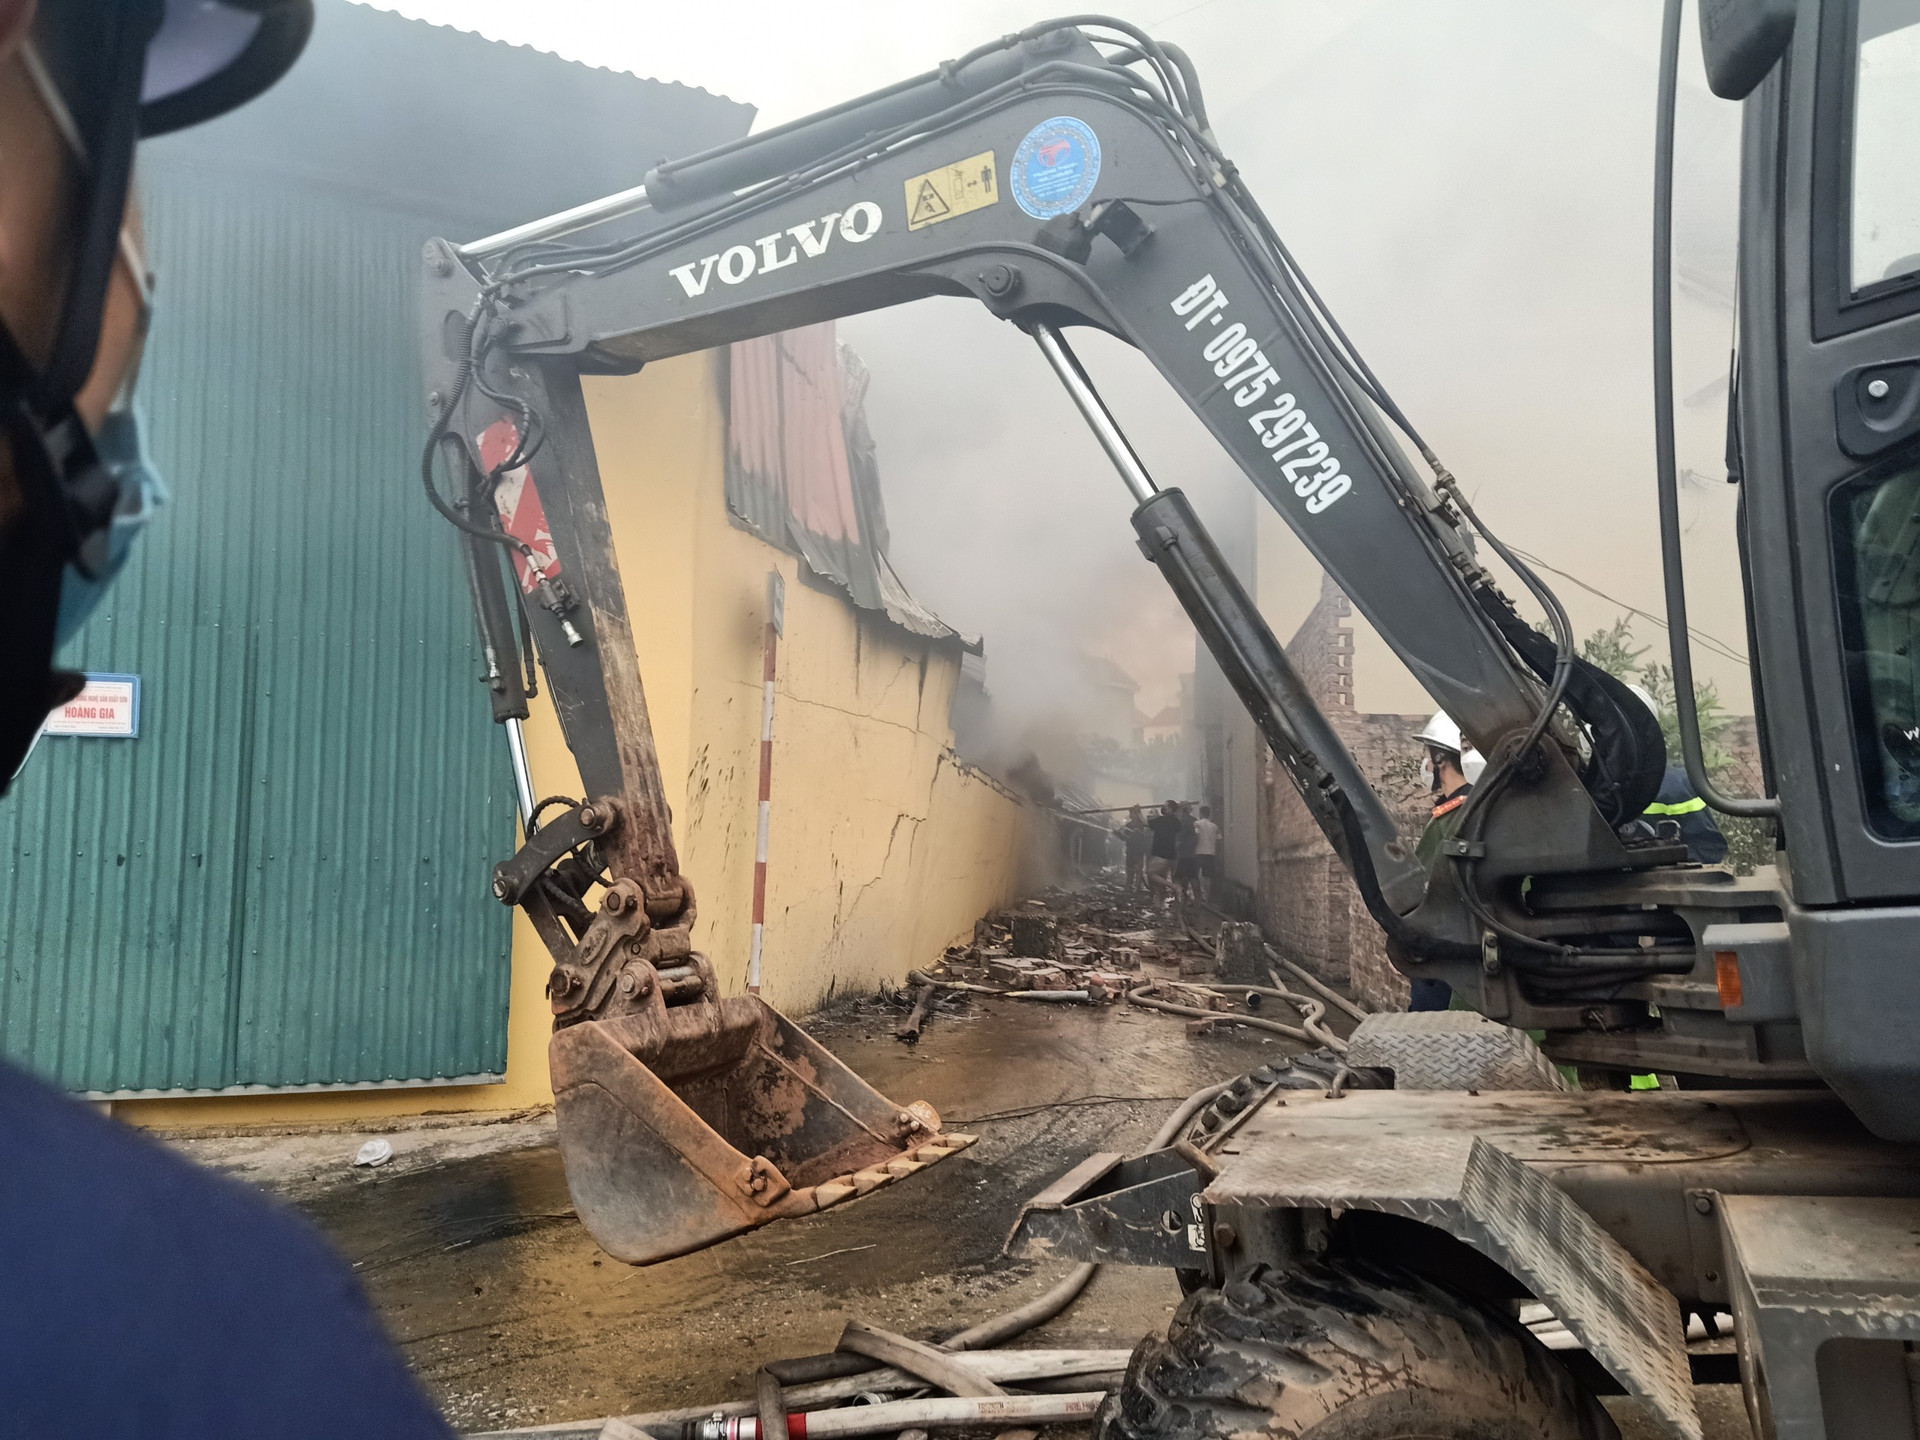 Hà Nội: Cháy lớn tại xưởng sơn huyện Đan Phượng, không có thiệt hại về người